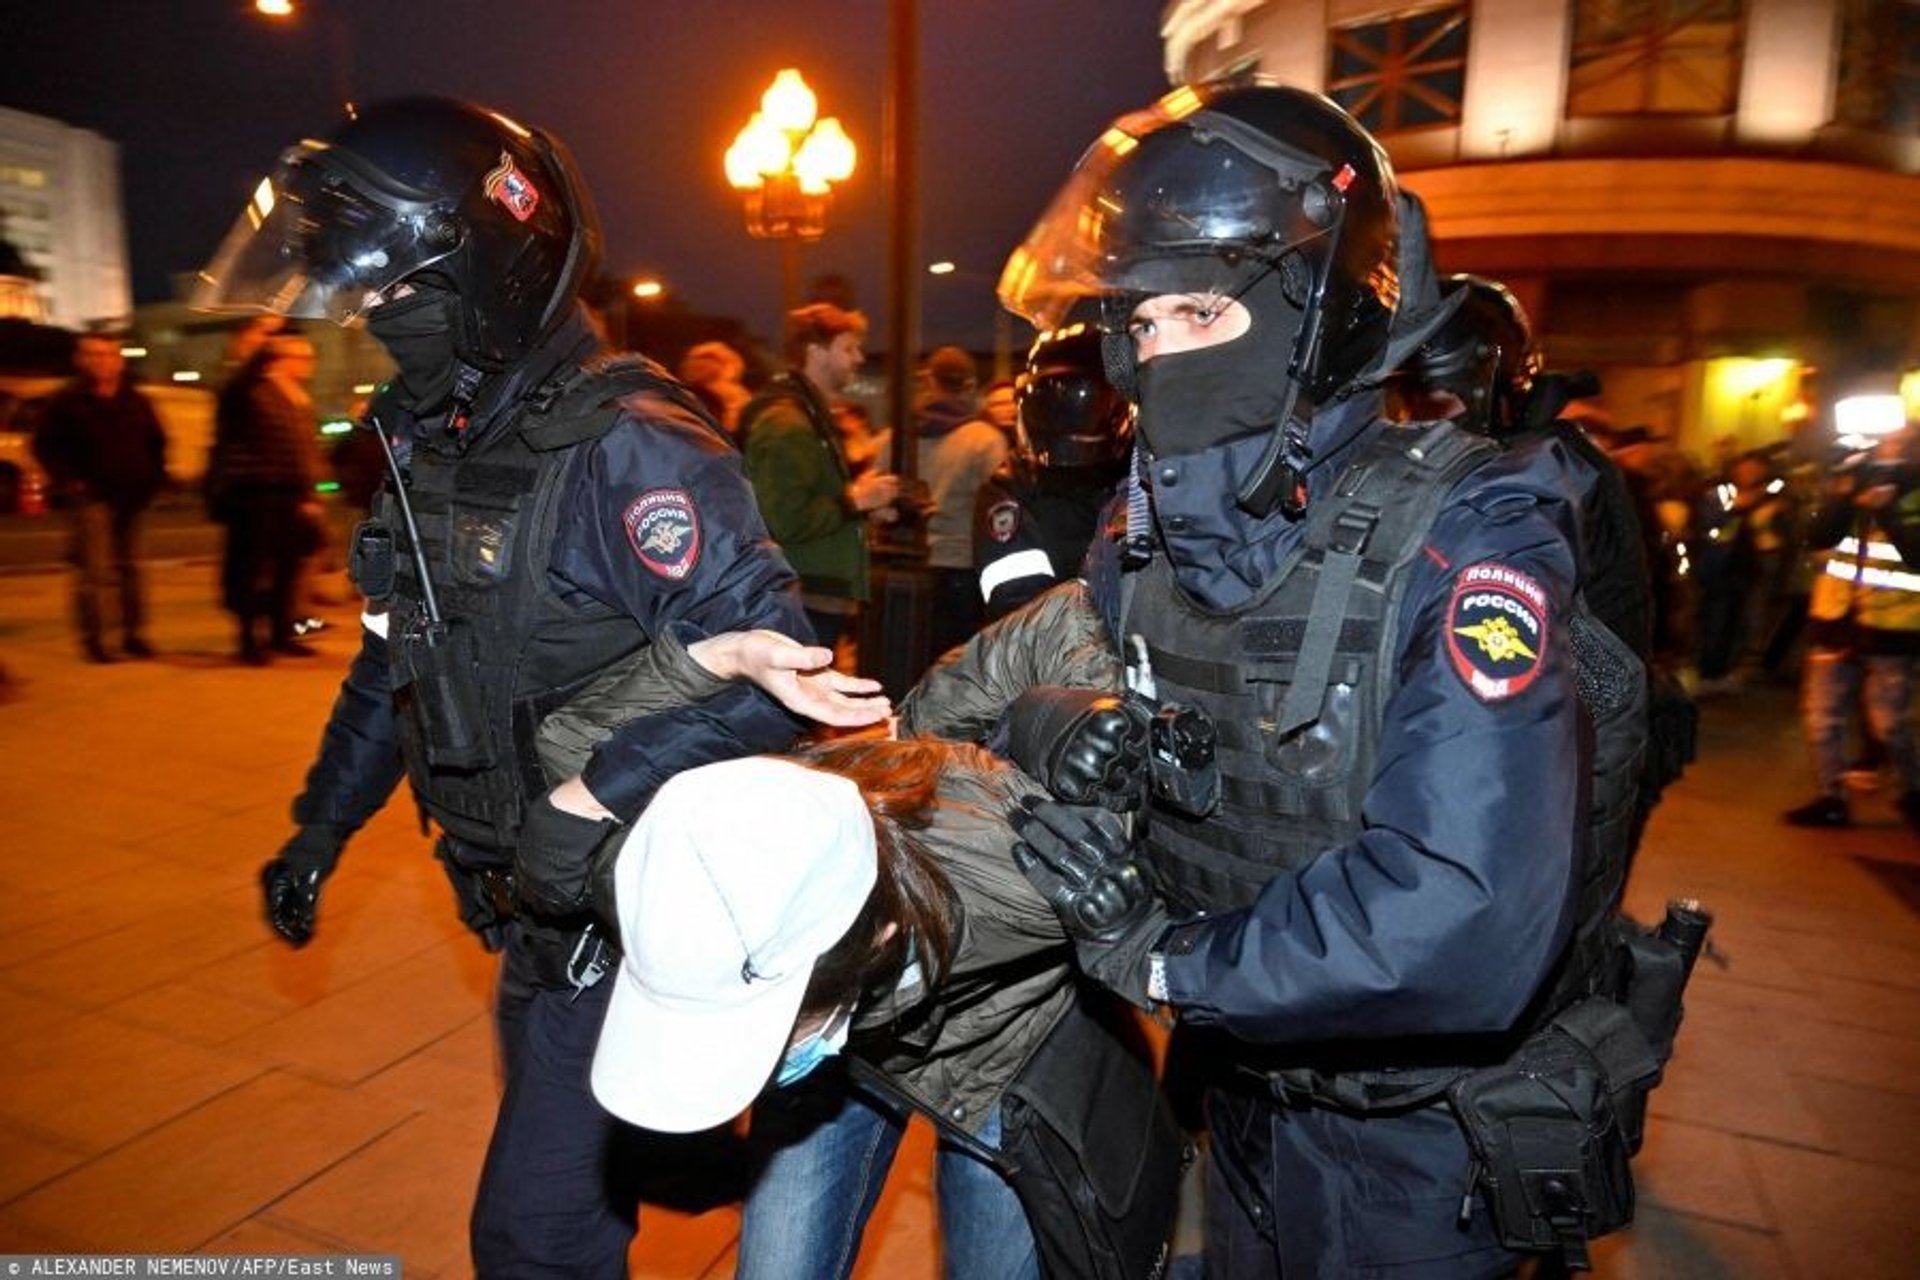 Masowe zatrzymania po antywojennych protestach w Rosji. Demonstranci dostają powołania do wojska